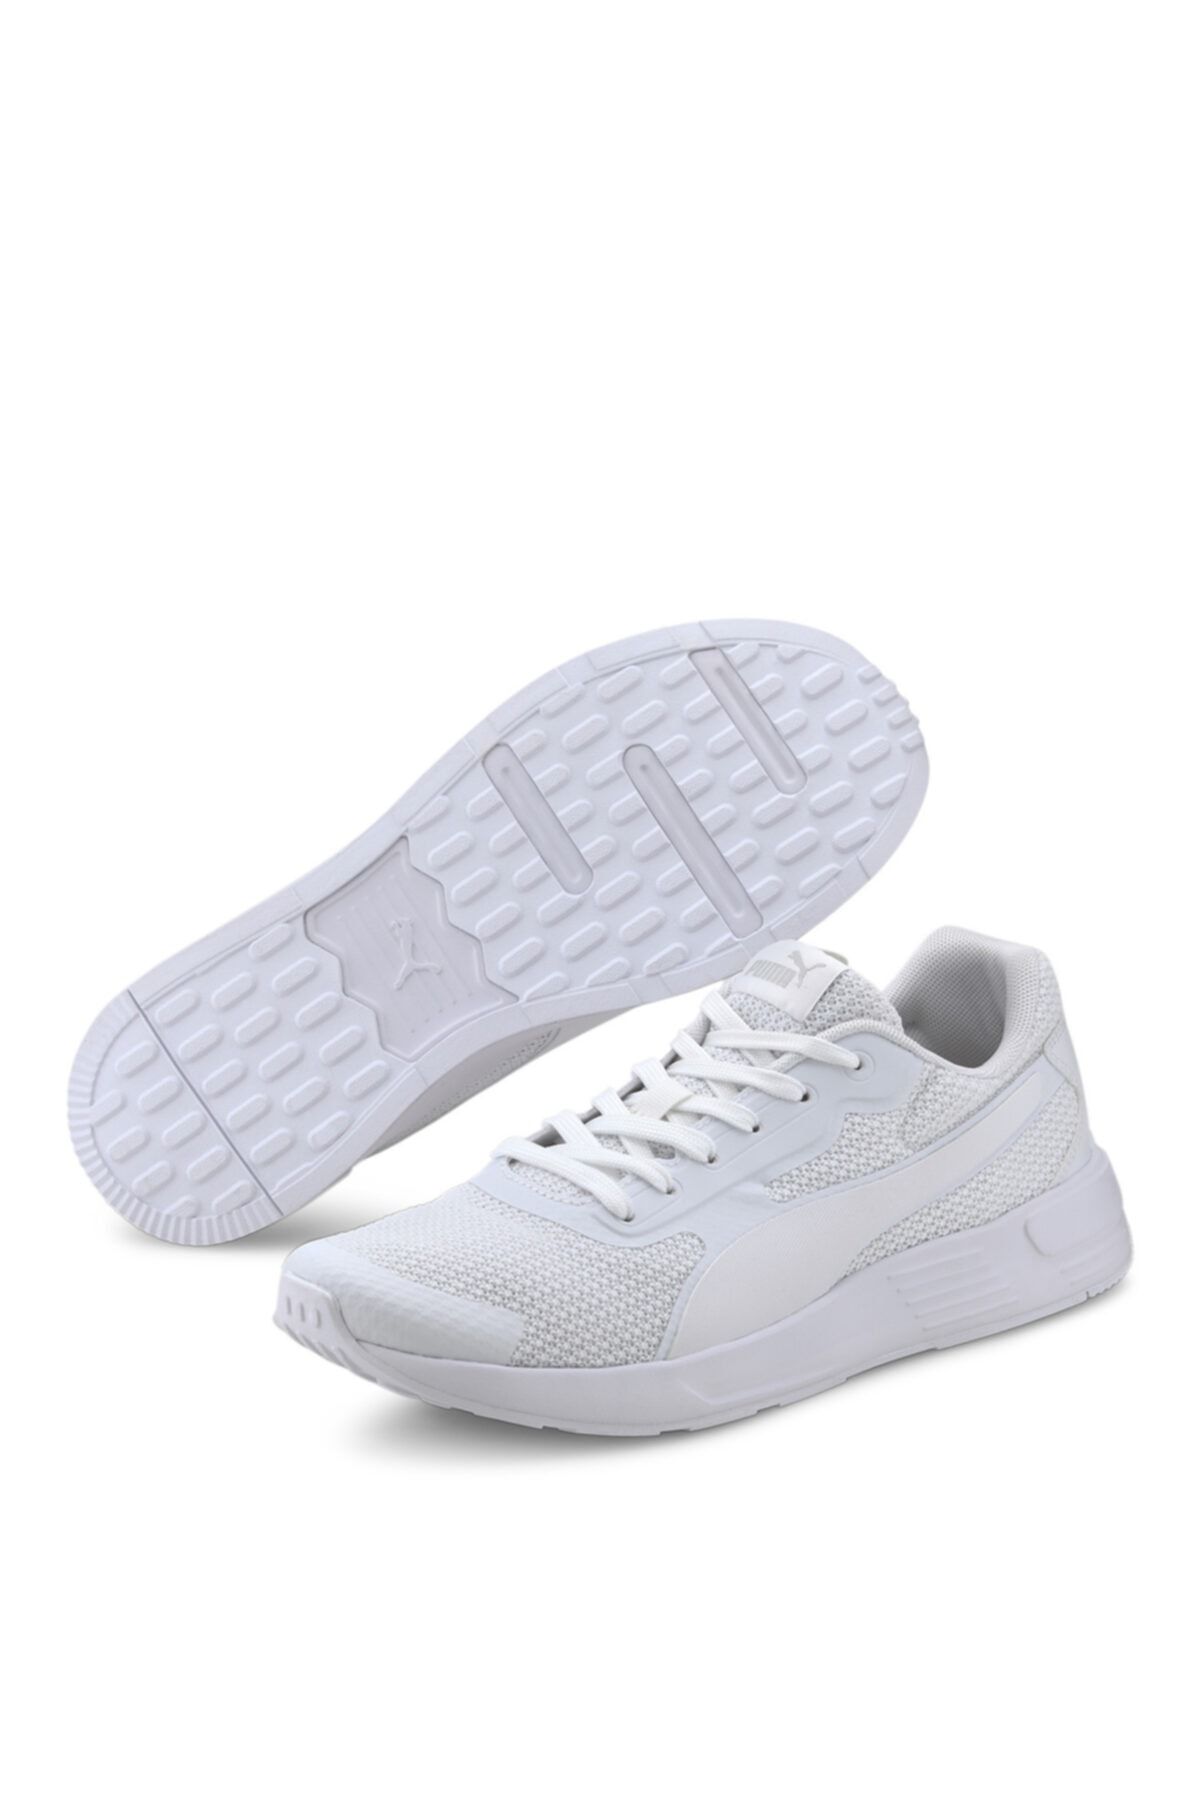 Puma Lifestyle Beyaz Ayakkabı